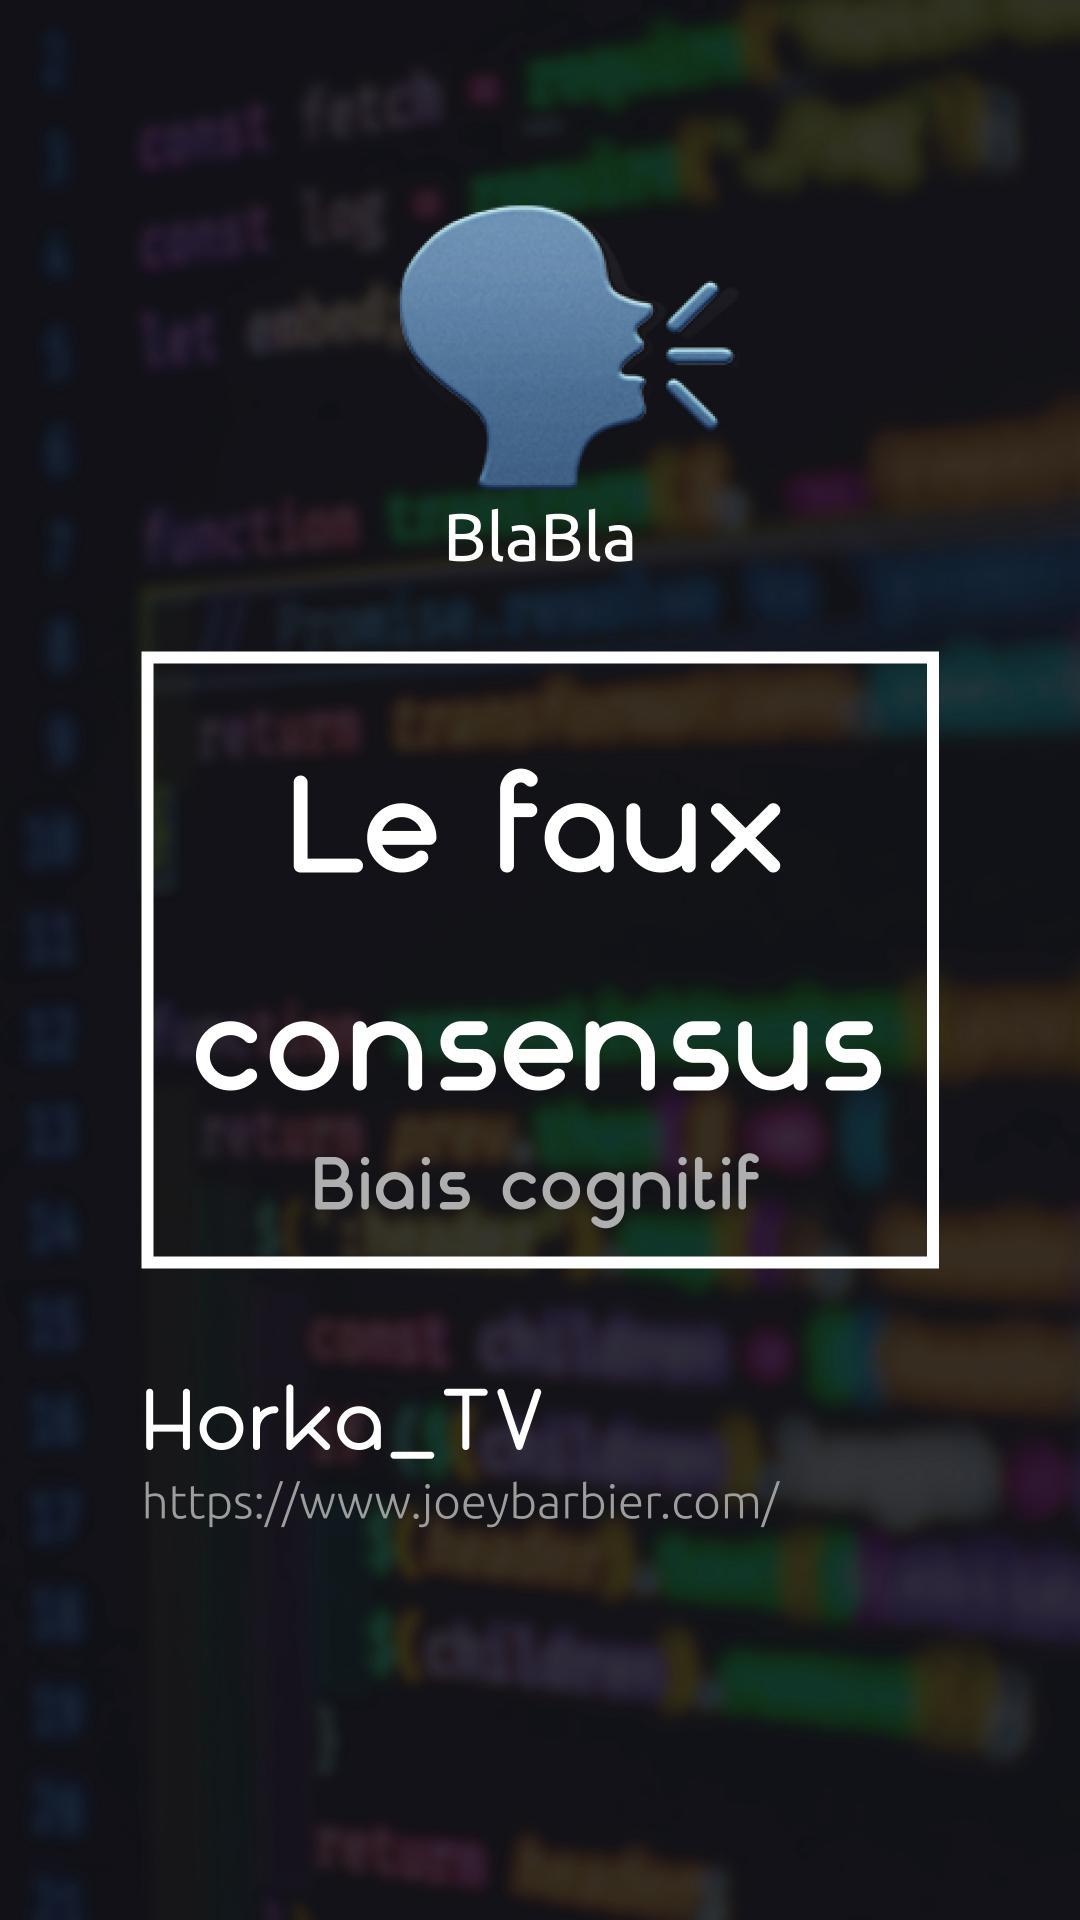 BlaBla: Le faux consensus